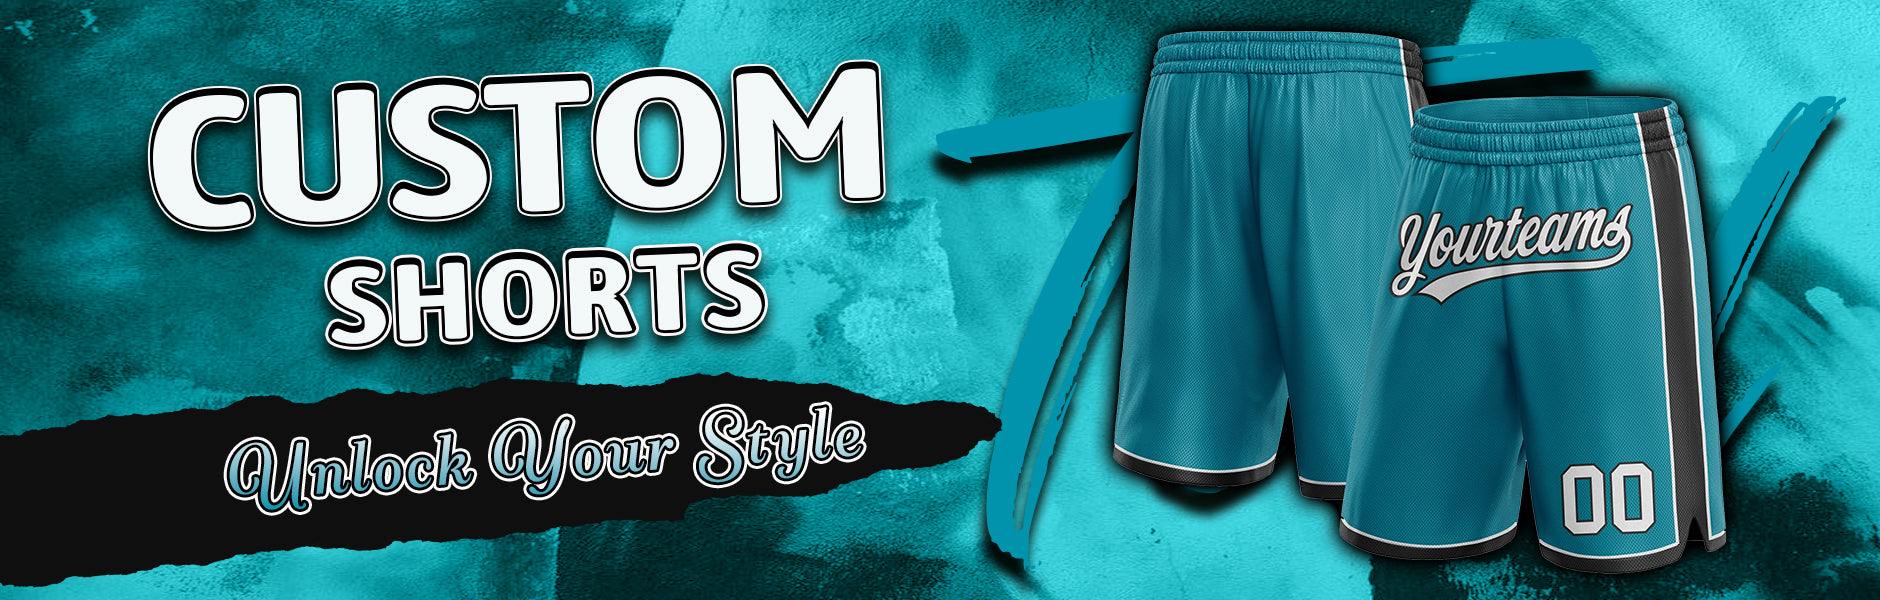 custom shorts teal